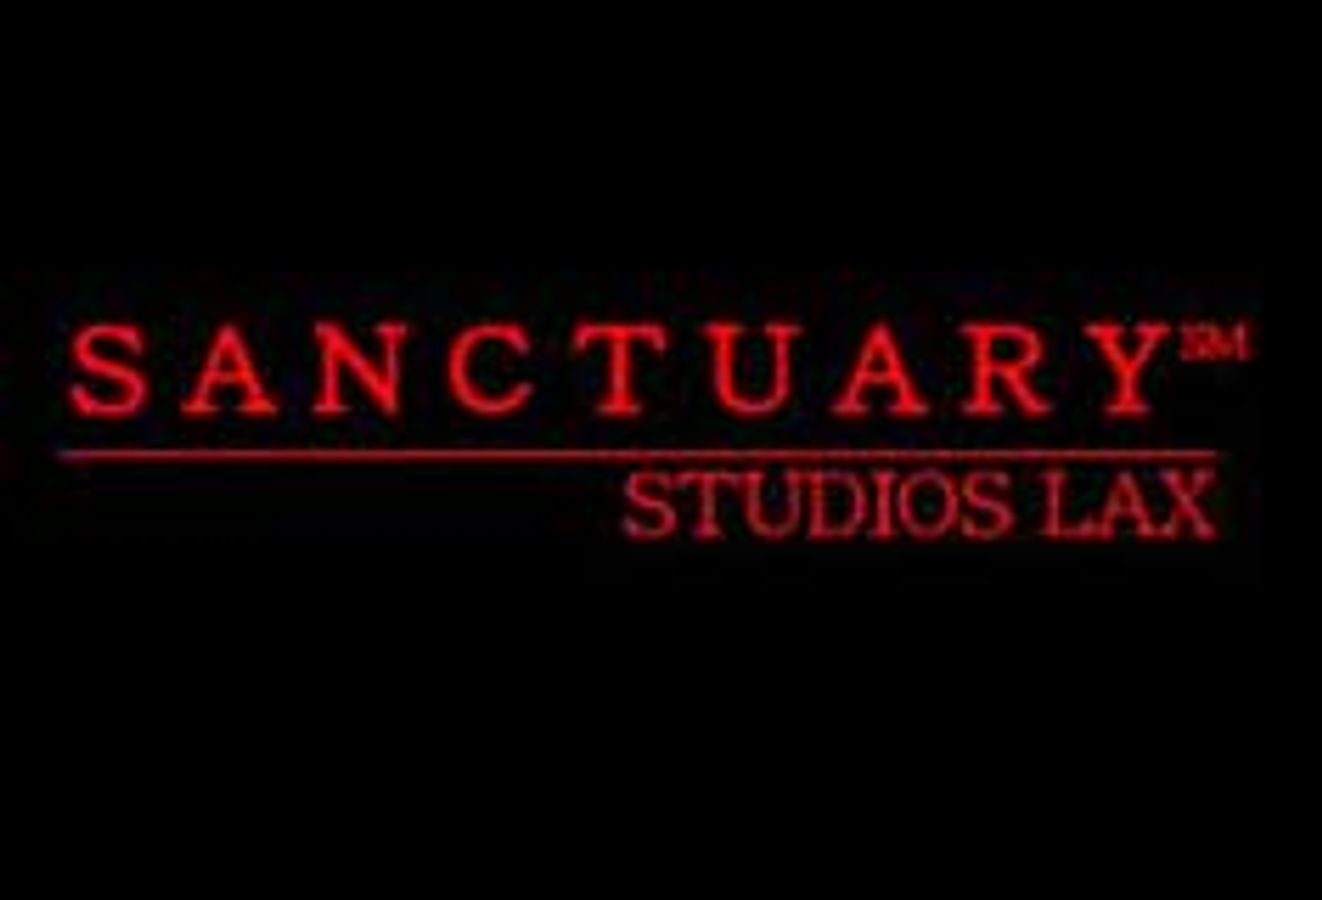 Sanctuary Studios LAX